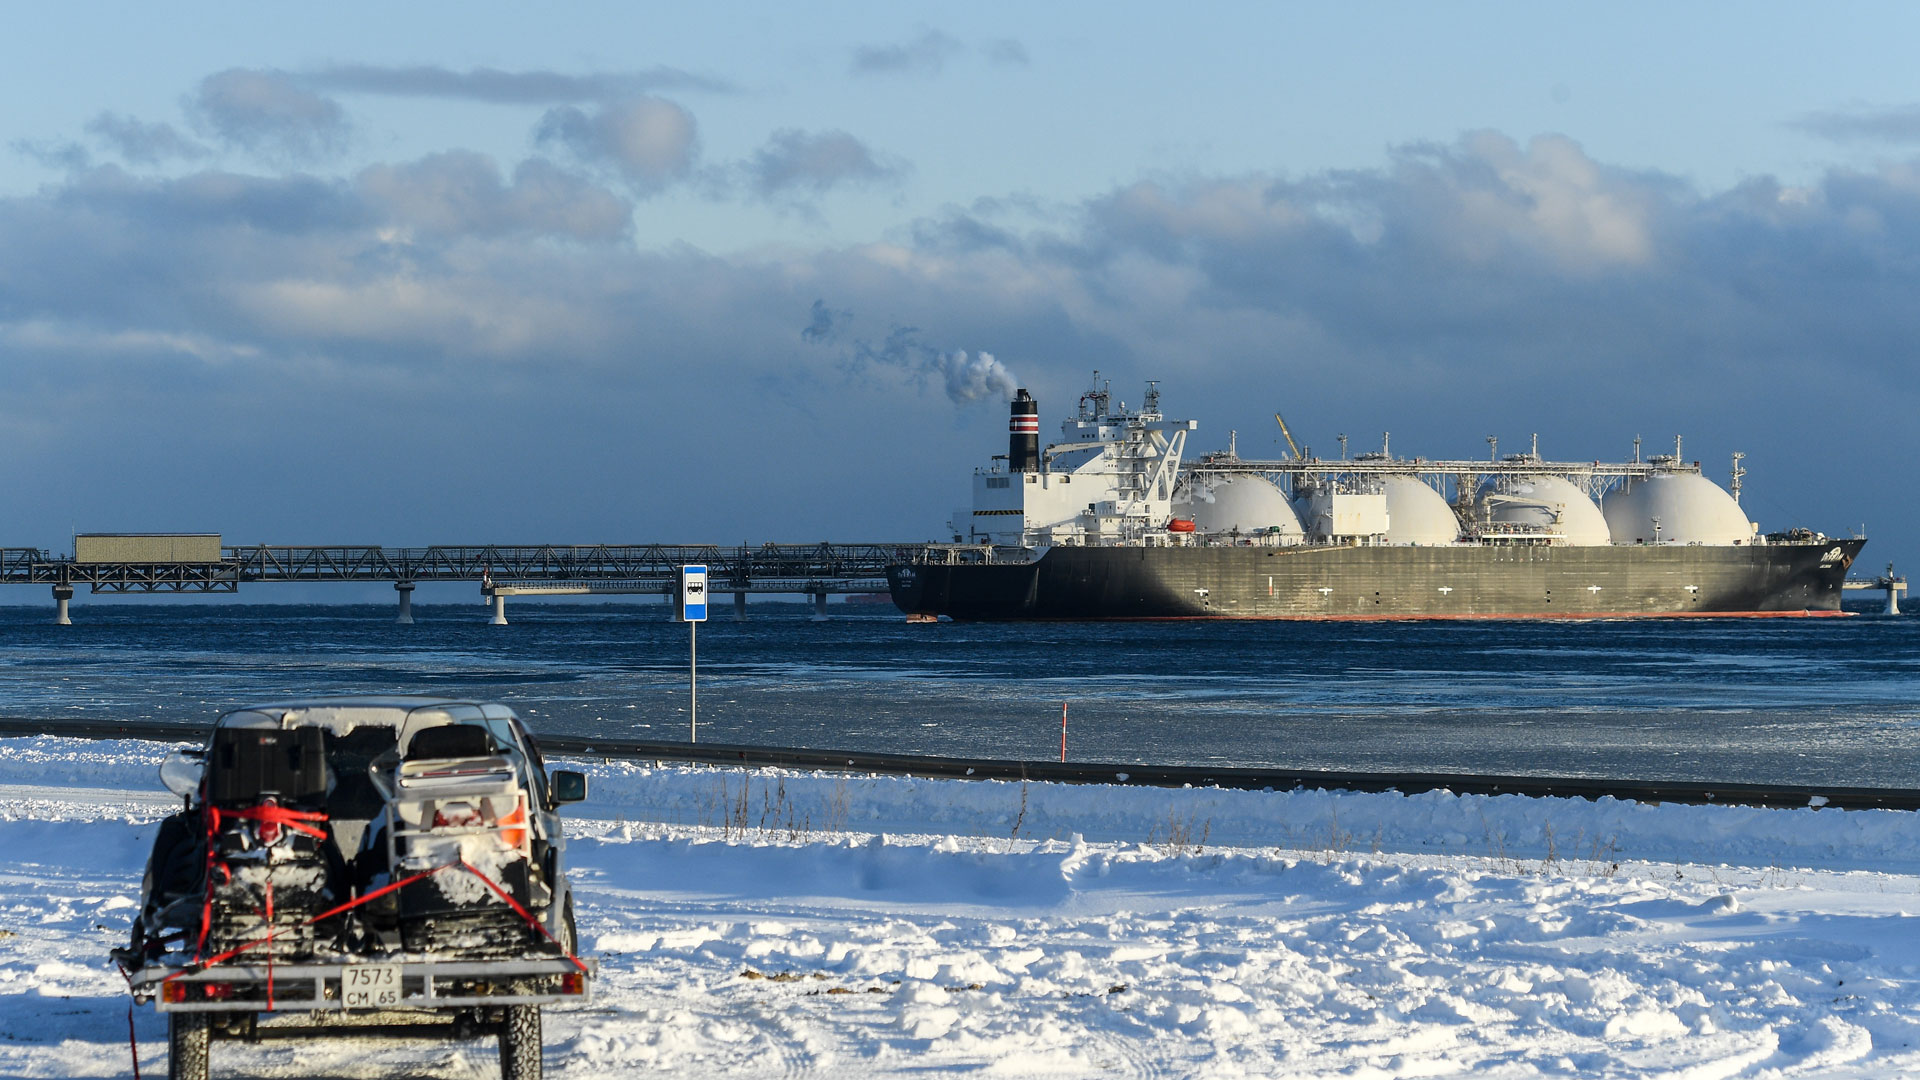 LNG Tanker am Kai einer Anlage für verflüssigtes Erdgas in Russland. | picture alliance/dpa/TASS